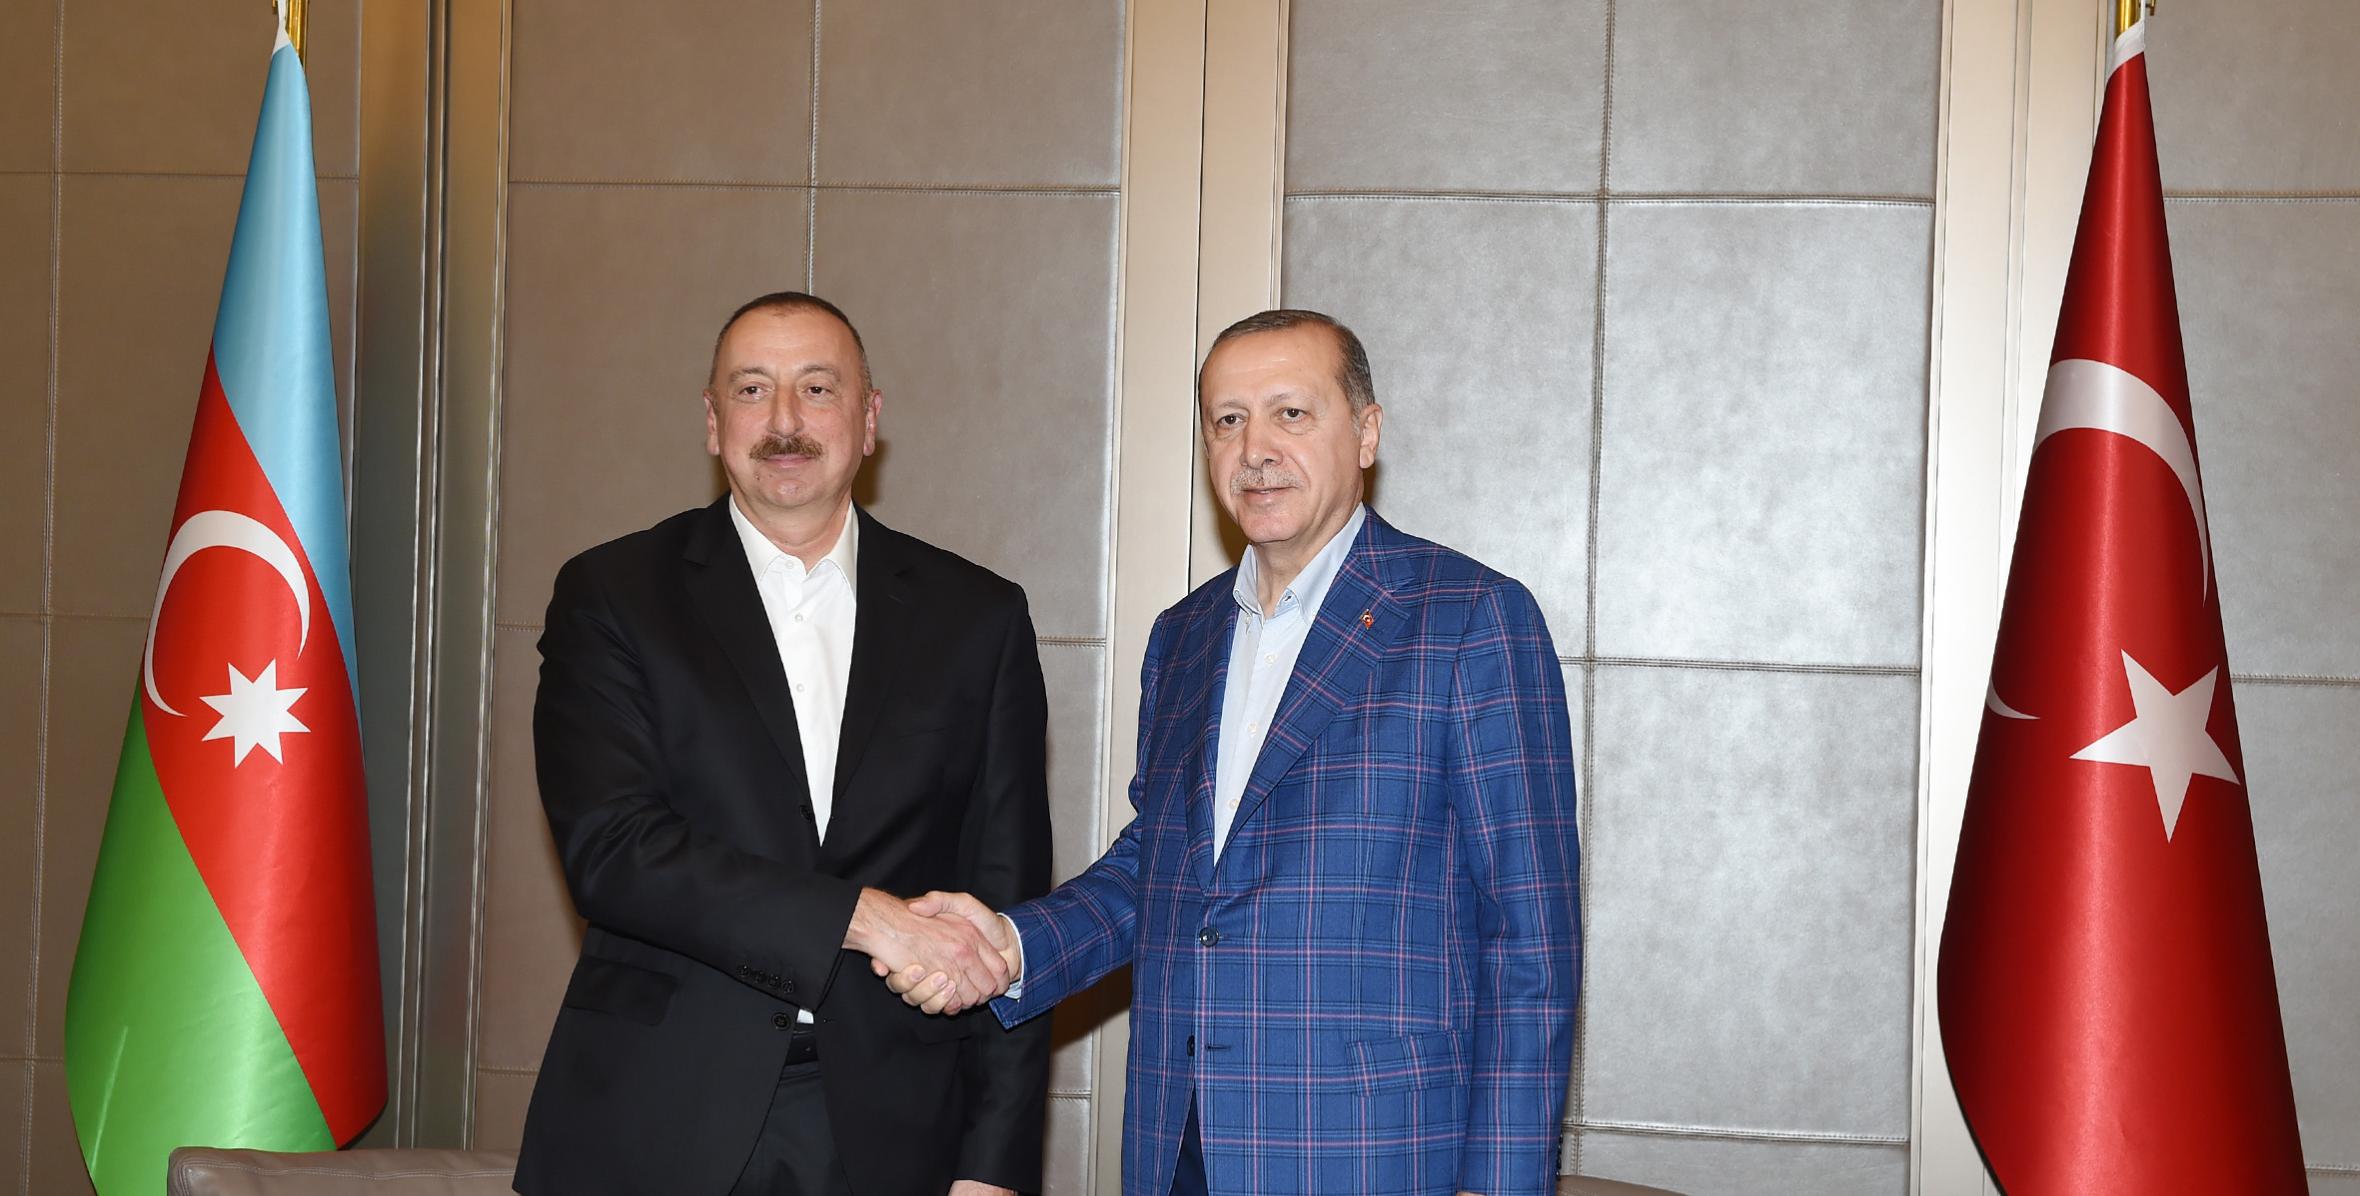 Ильхам Алиев встретился с Президентом Турции Реджепом Тайипом Эрдоганом, состоялся совместный ужин